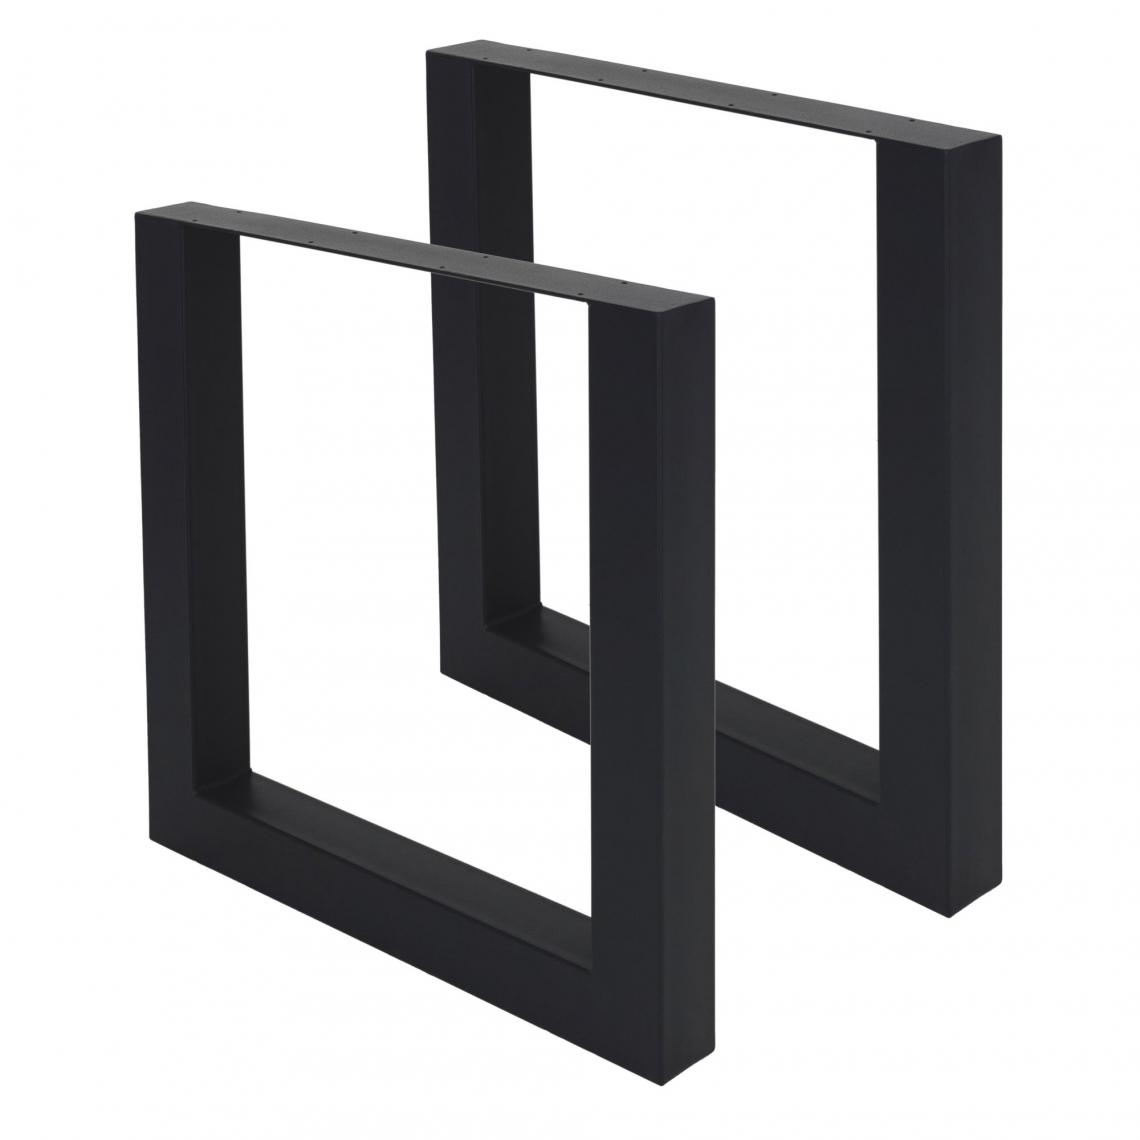 ML-Design - 2 x Pieds de table industriel cadre meuble bureau profil carré noir 70 x 72 cm - Pieds & roulettes pour meuble